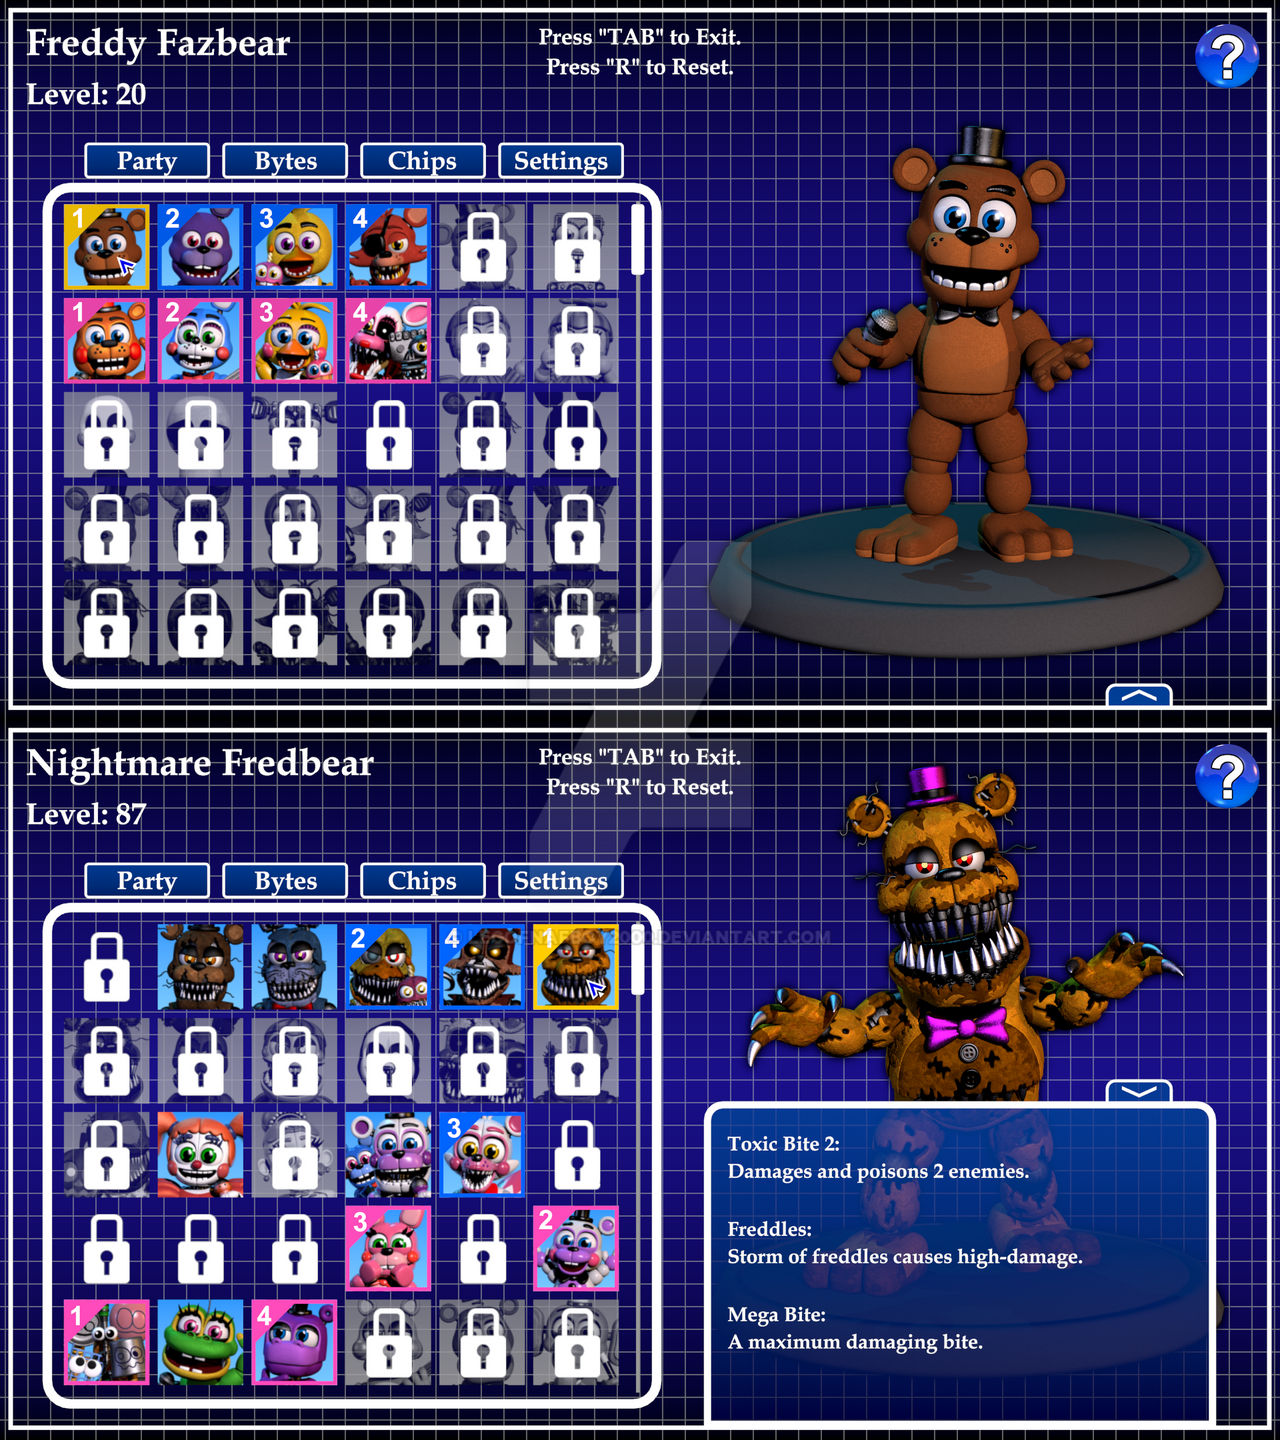 FNAF World Ultimate Character Roster (WIP) by Legofnafboy2000 on DeviantArt